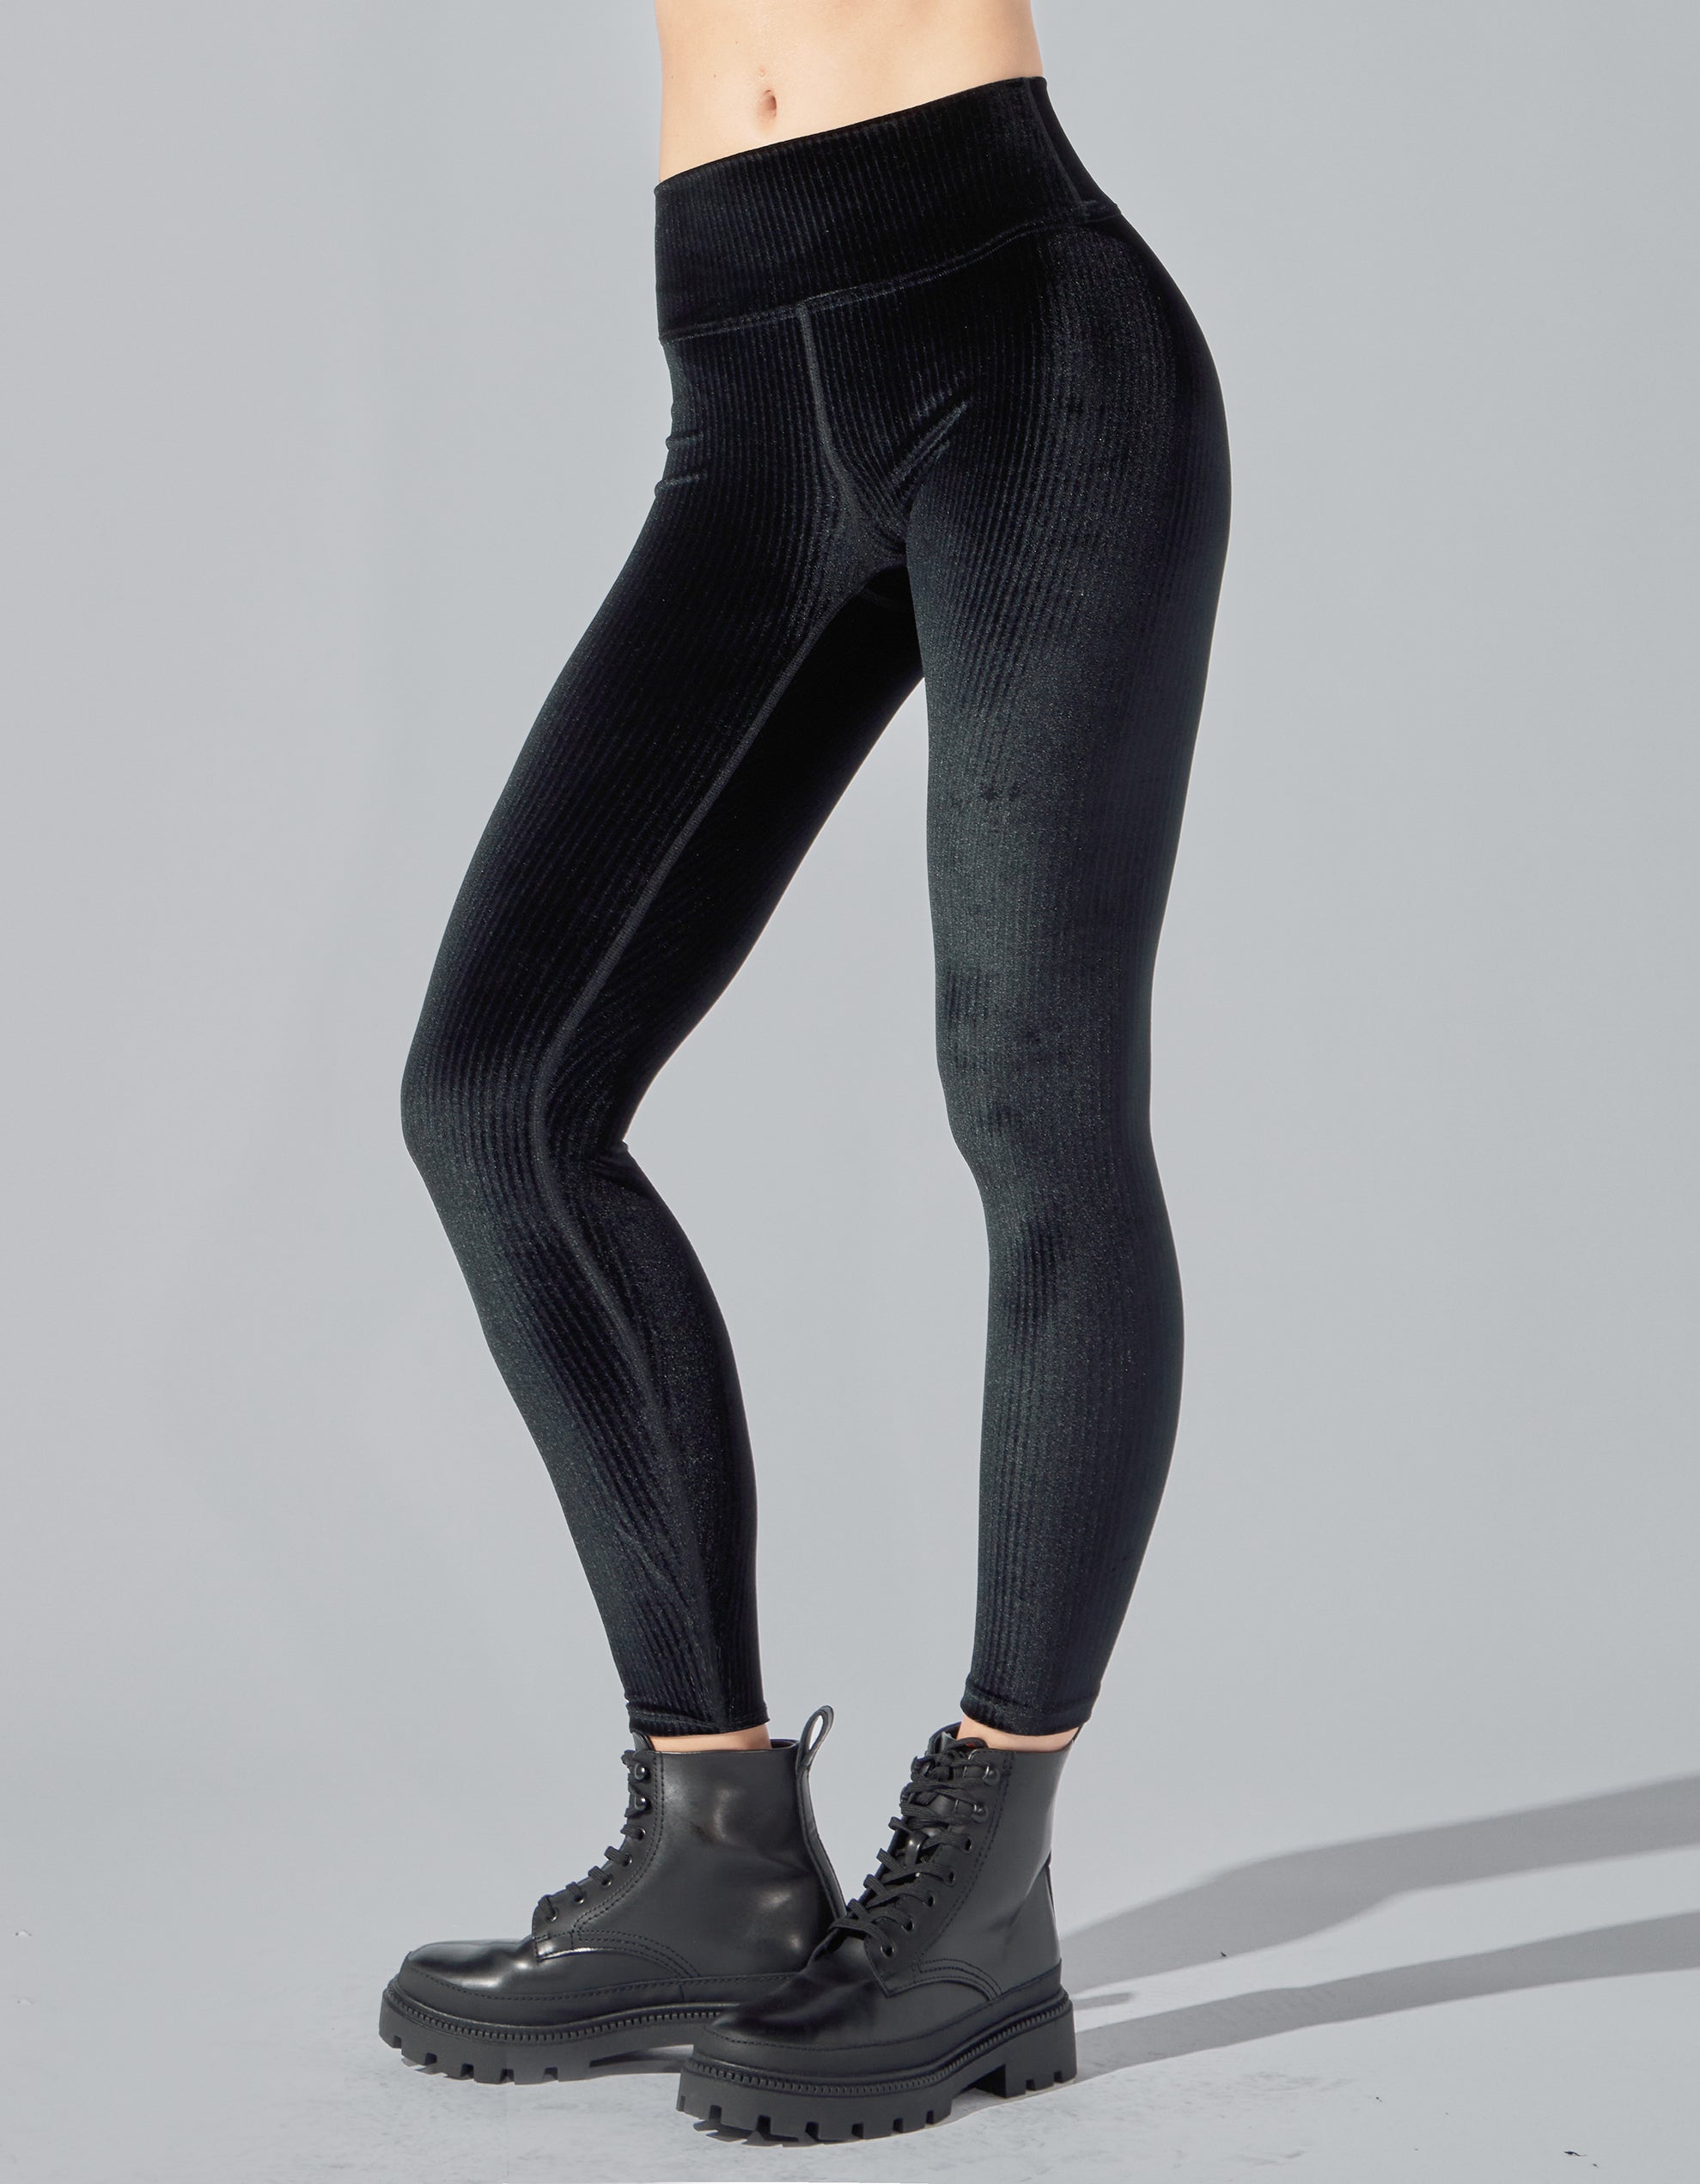 BLACK VELVET LEGGINGS  Black velvet leggings, Velvet leggings outfit,  Black velvet leggings outfit